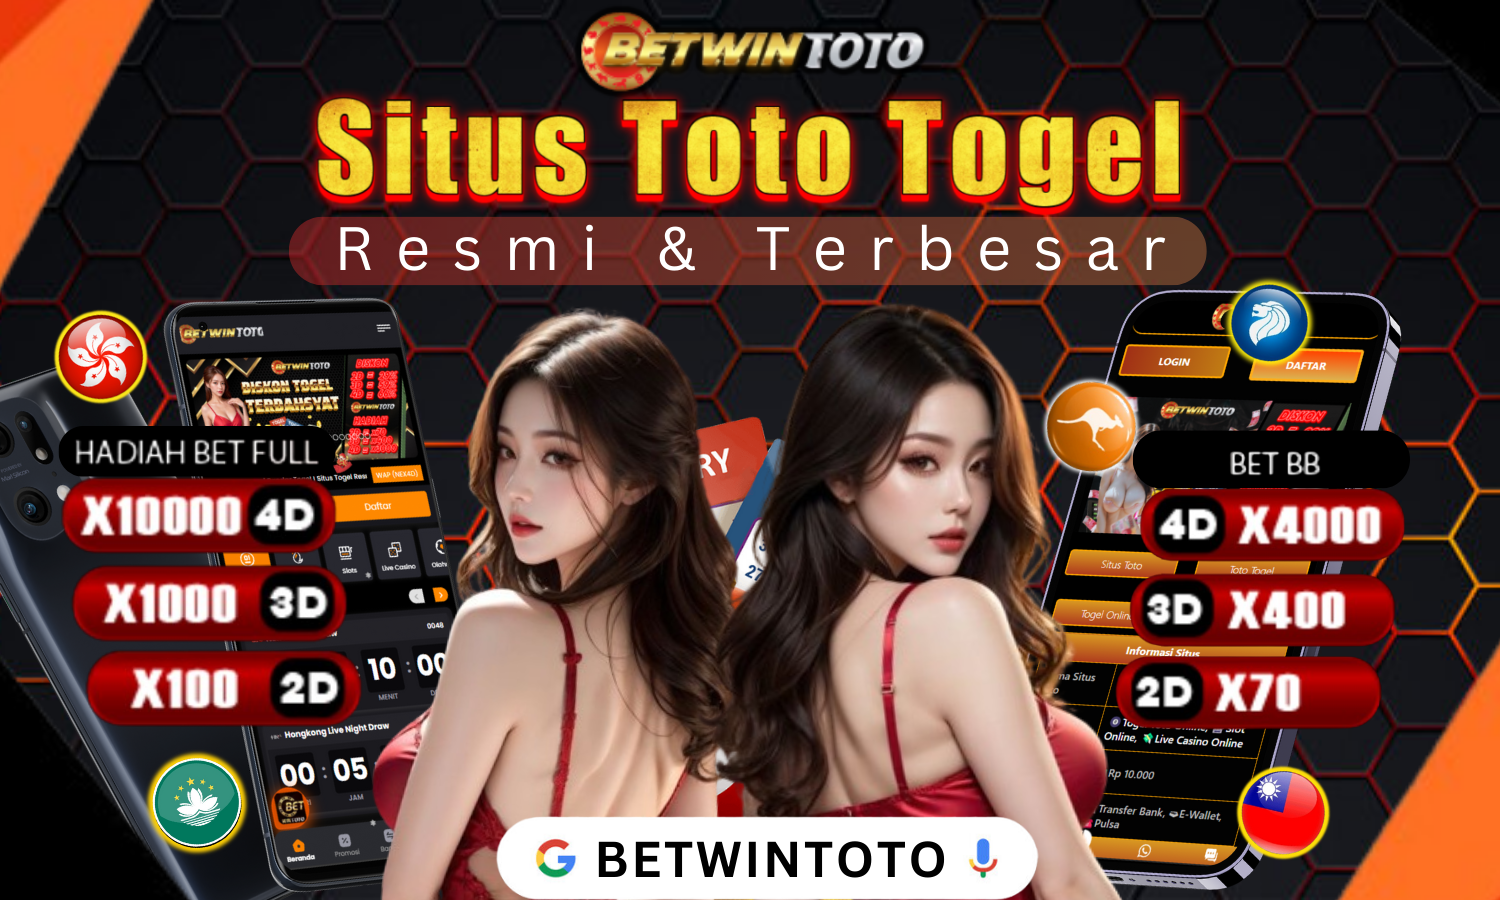 BETWINTOTO: Situs Toto Togel Online 4D Terbesar & Resmi Pasti Bayar